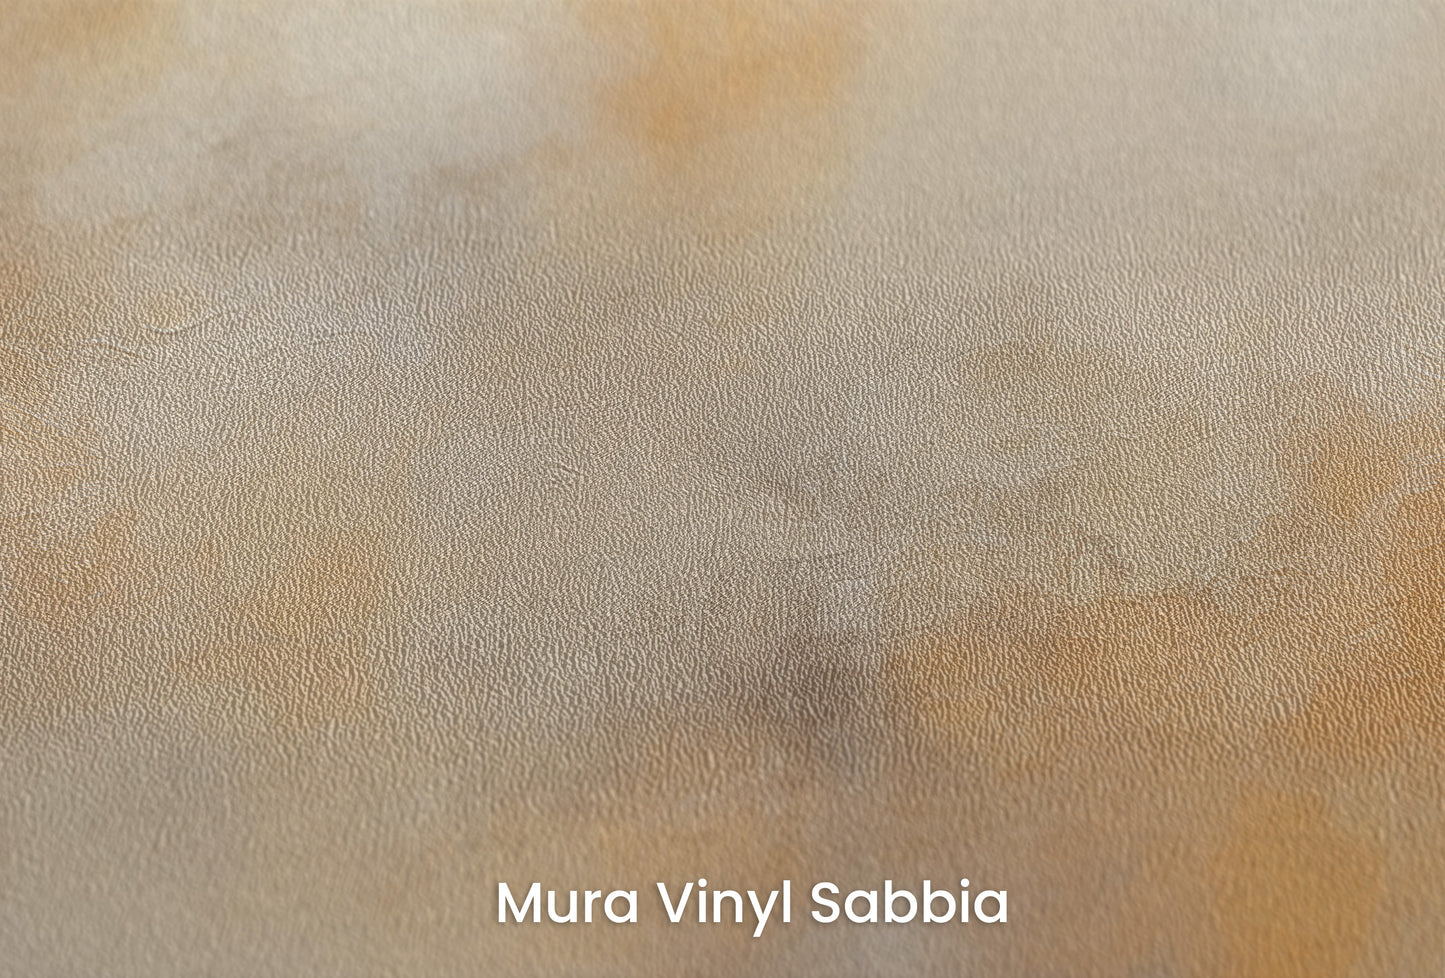 Zbliżenie na artystyczną fototapetę o nazwie WARMTH OF THE MORNING MIST na podłożu Mura Vinyl Sabbia struktura grubego ziarna piasku.